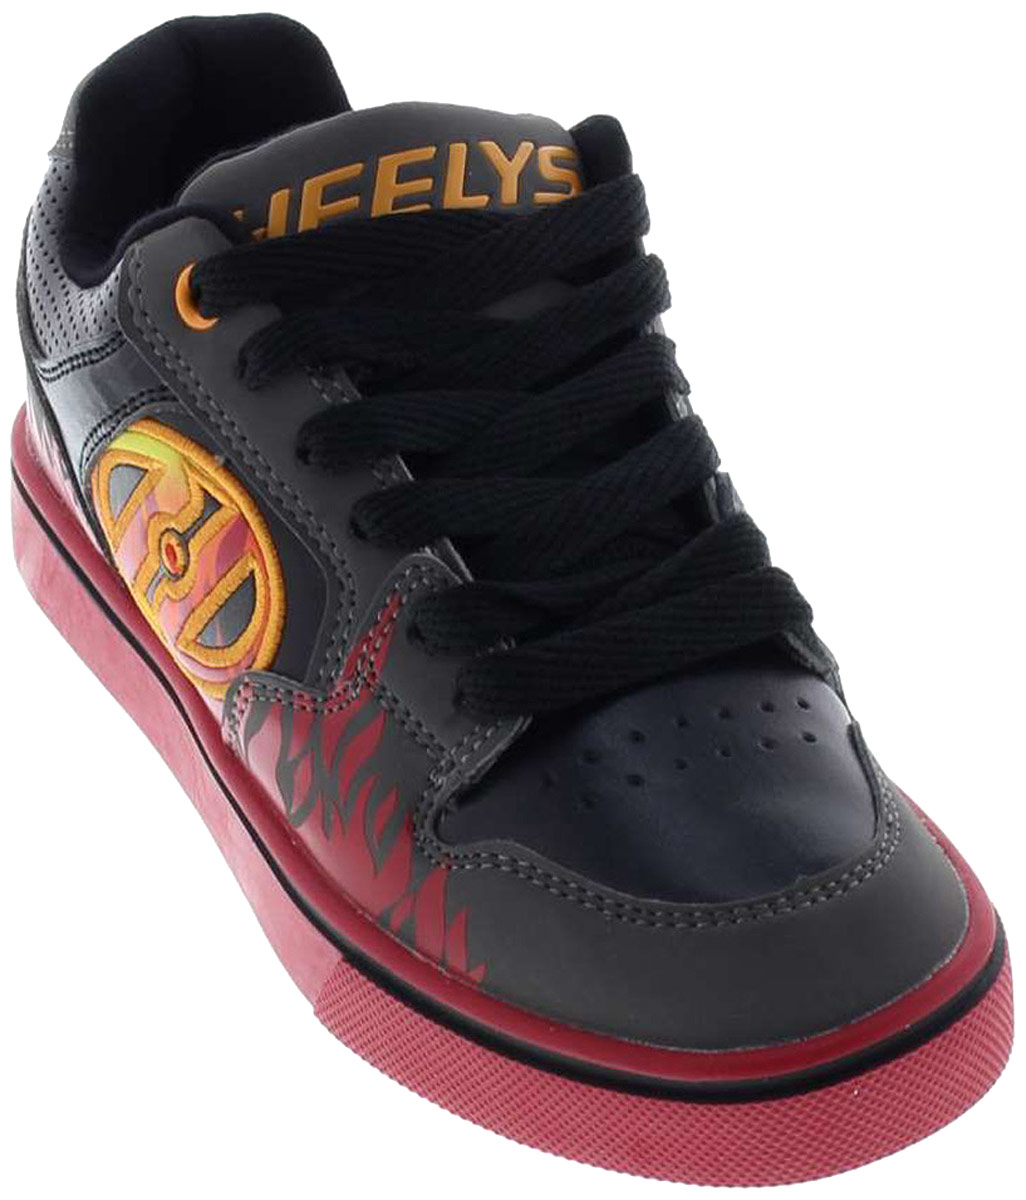 Кроссовки роликовые для мальчика Heelys Propel 2.0, цвет: серый, красный. 770815. Размер 6 (37)